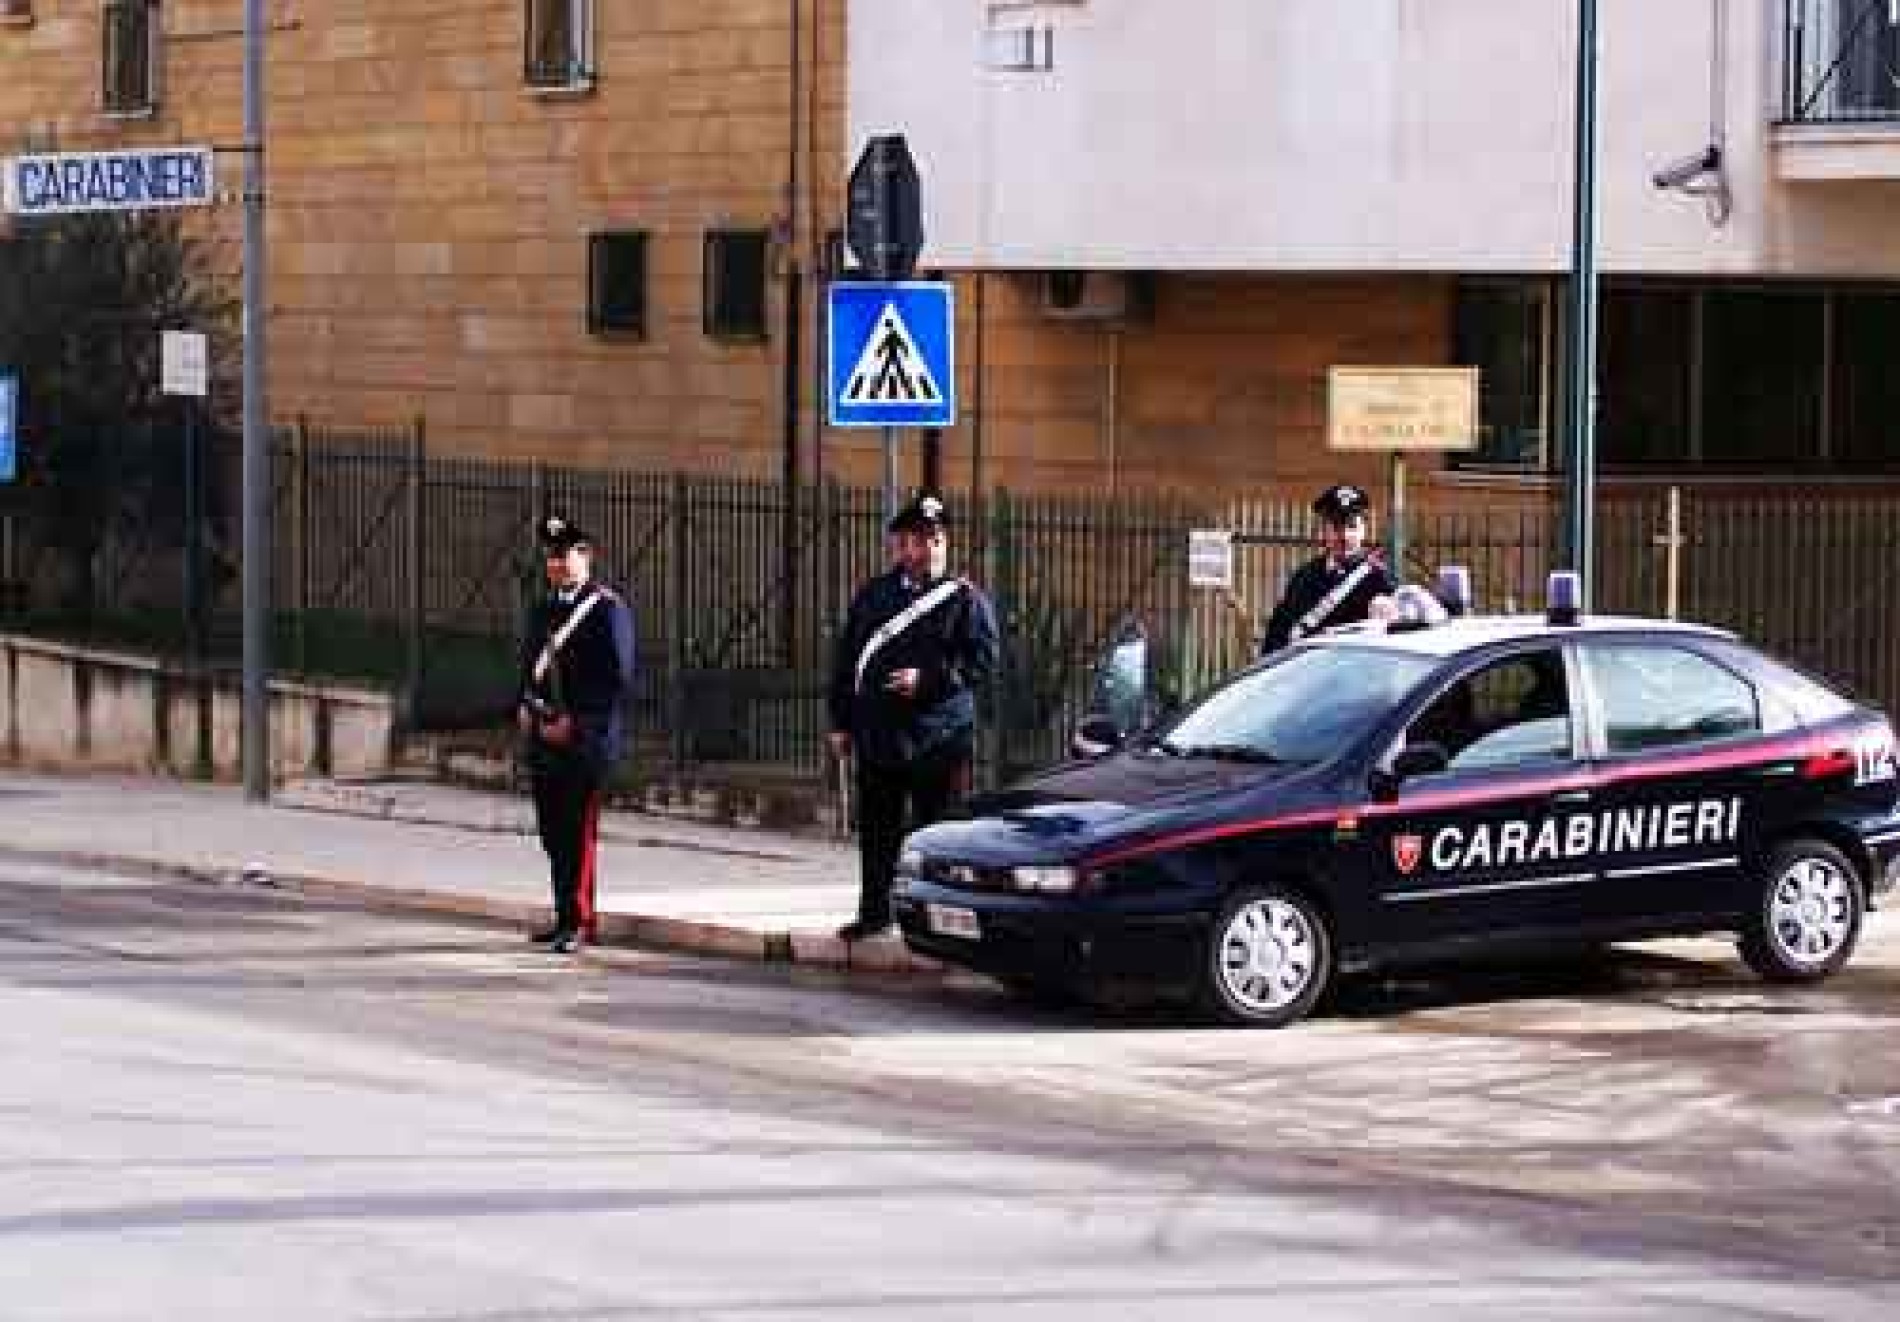 BARRAFRANCA. A breve arriverà il nuovo comandante la stazione carabinieri.